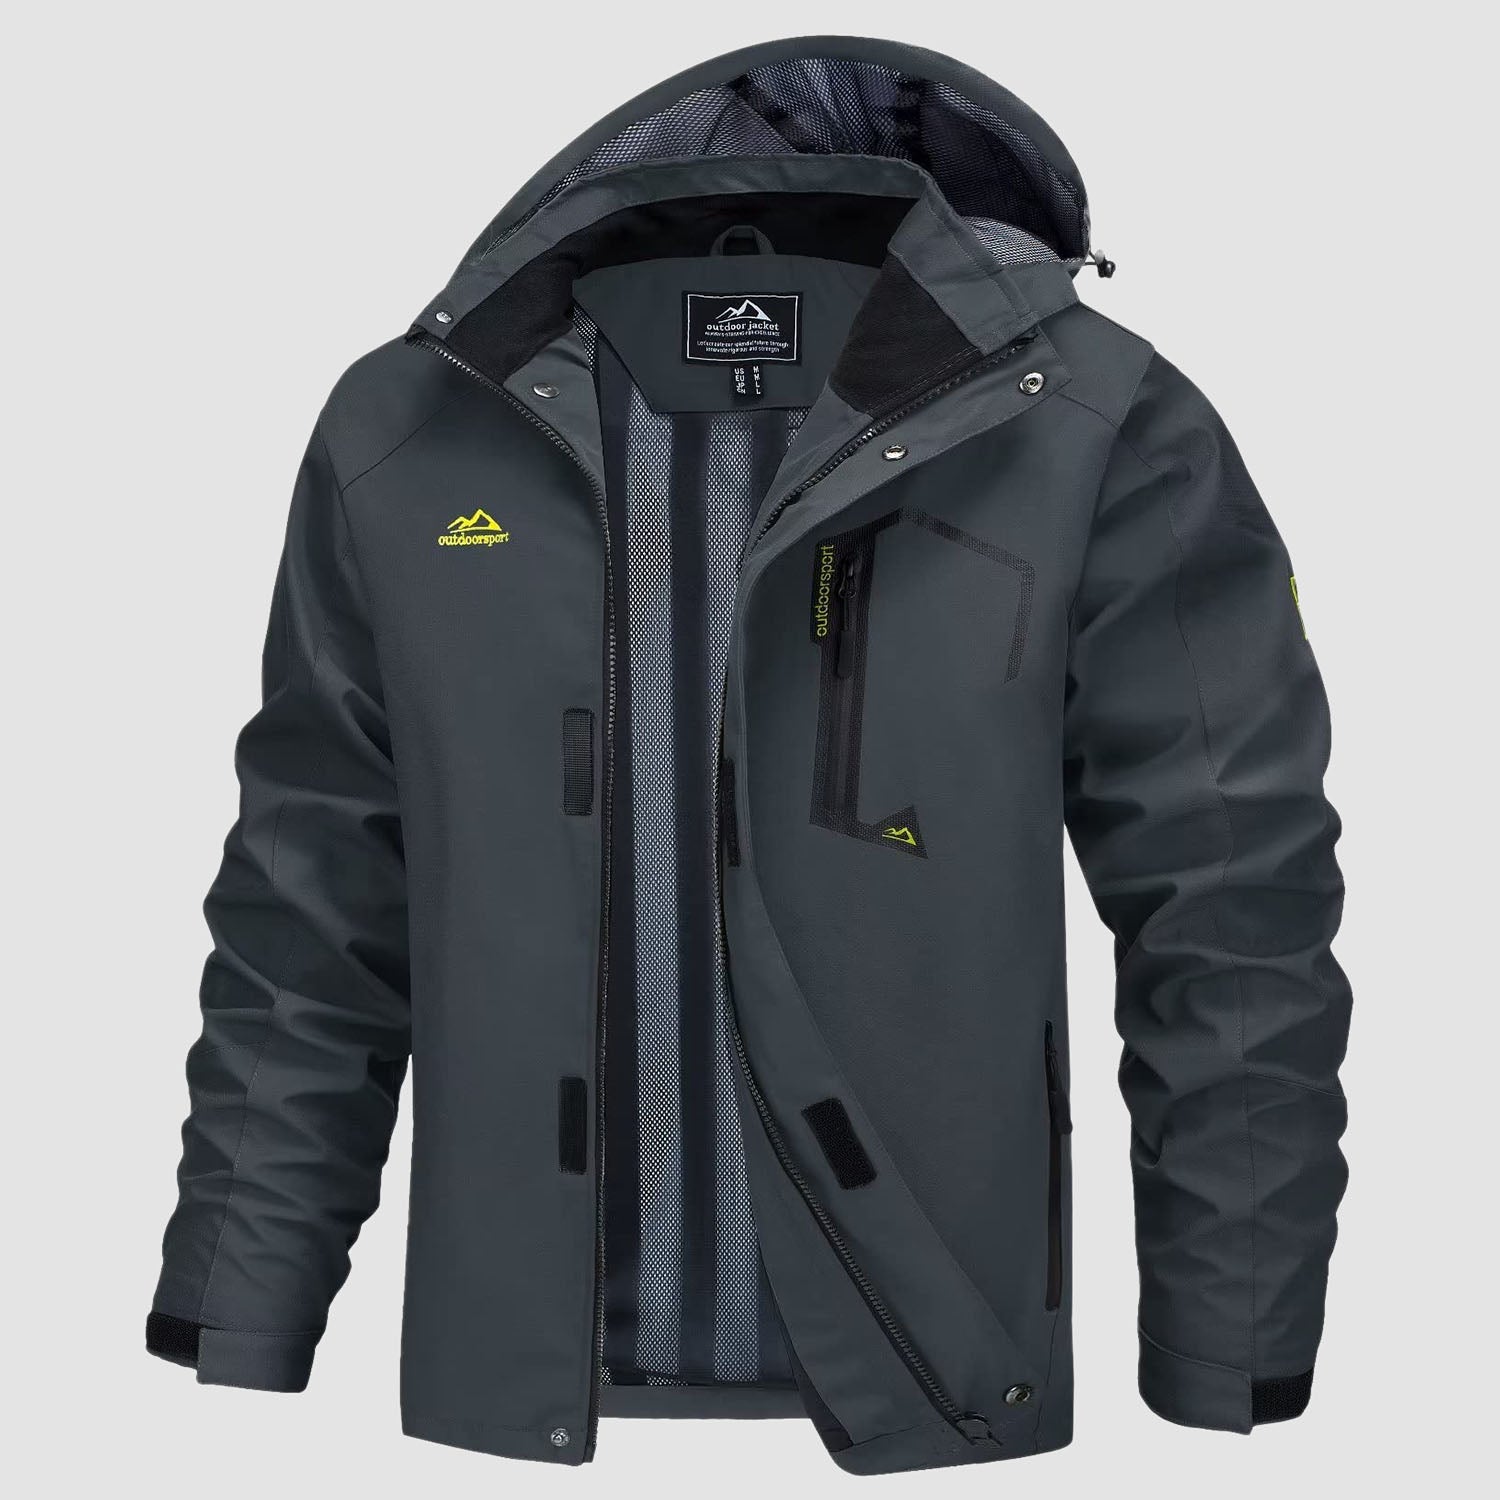 Men's Jacket Water Resistant Windbreaker Coat for Outdoor